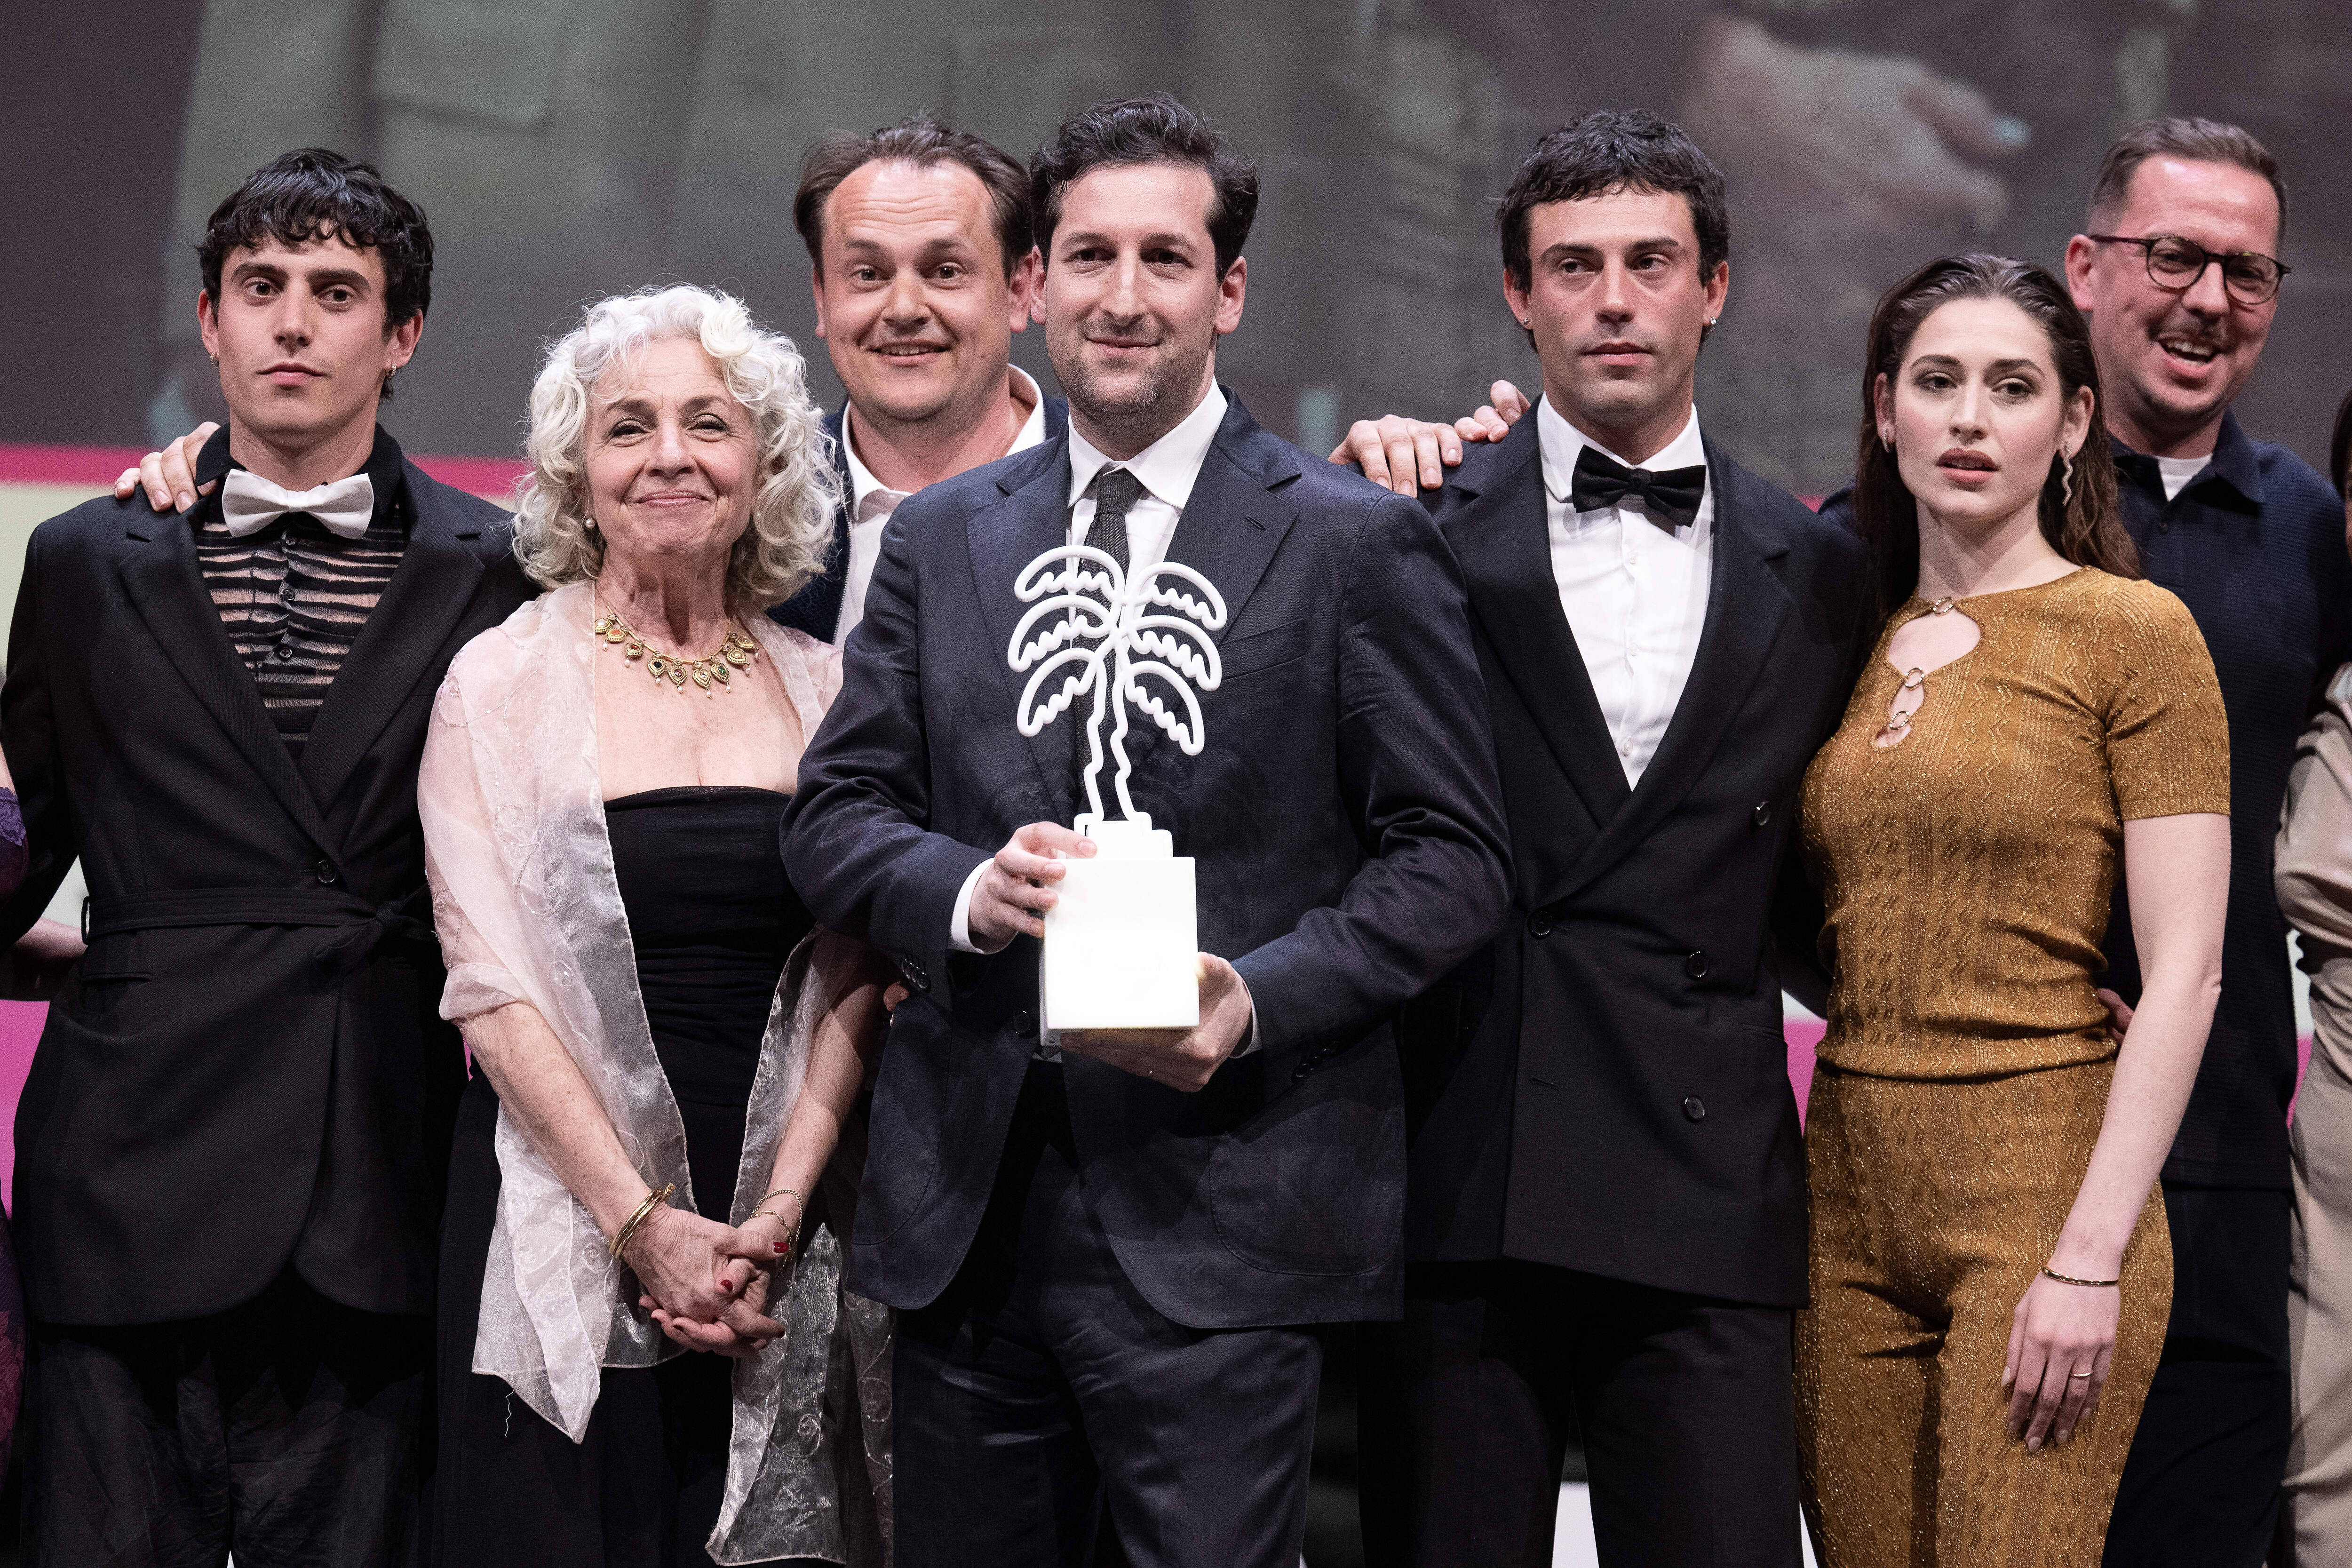 Serienschöpfer David Hadda (mitte) beim Internationalen Serienfestival in Cannes: Bereits im April wurde seine Serie „Die Zweiflers“ zur besten Serie des Jahres gekürt.